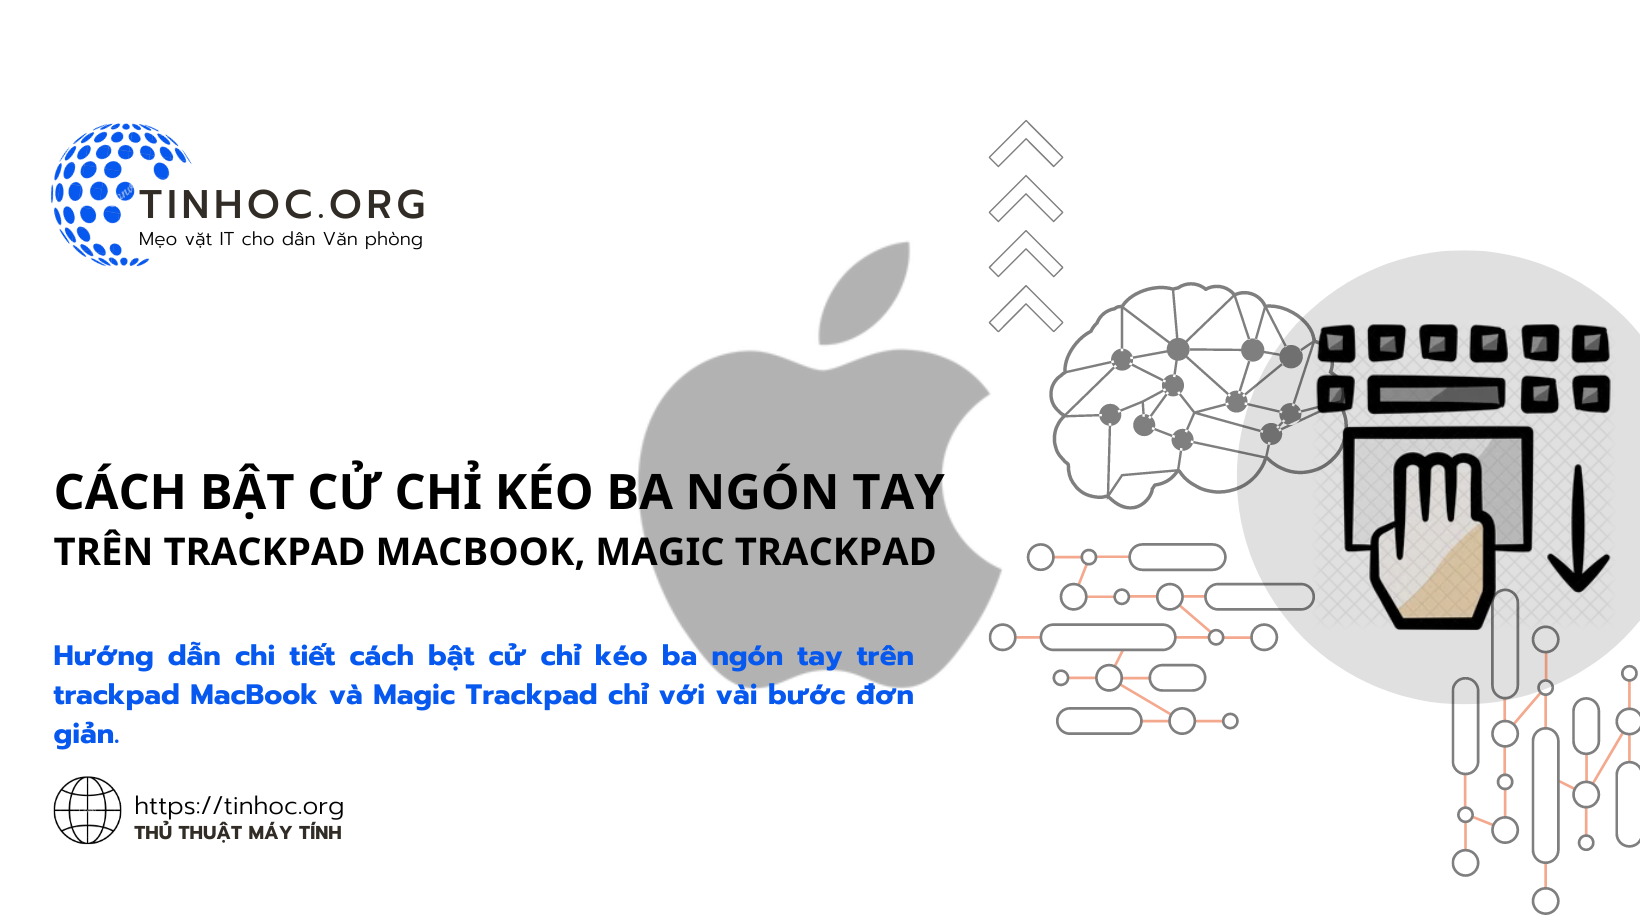 Hướng dẫn chi tiết cách bật cử chỉ kéo ba ngón tay trên trackpad MacBook và Magic Trackpad chỉ với vài bước đơn giản.